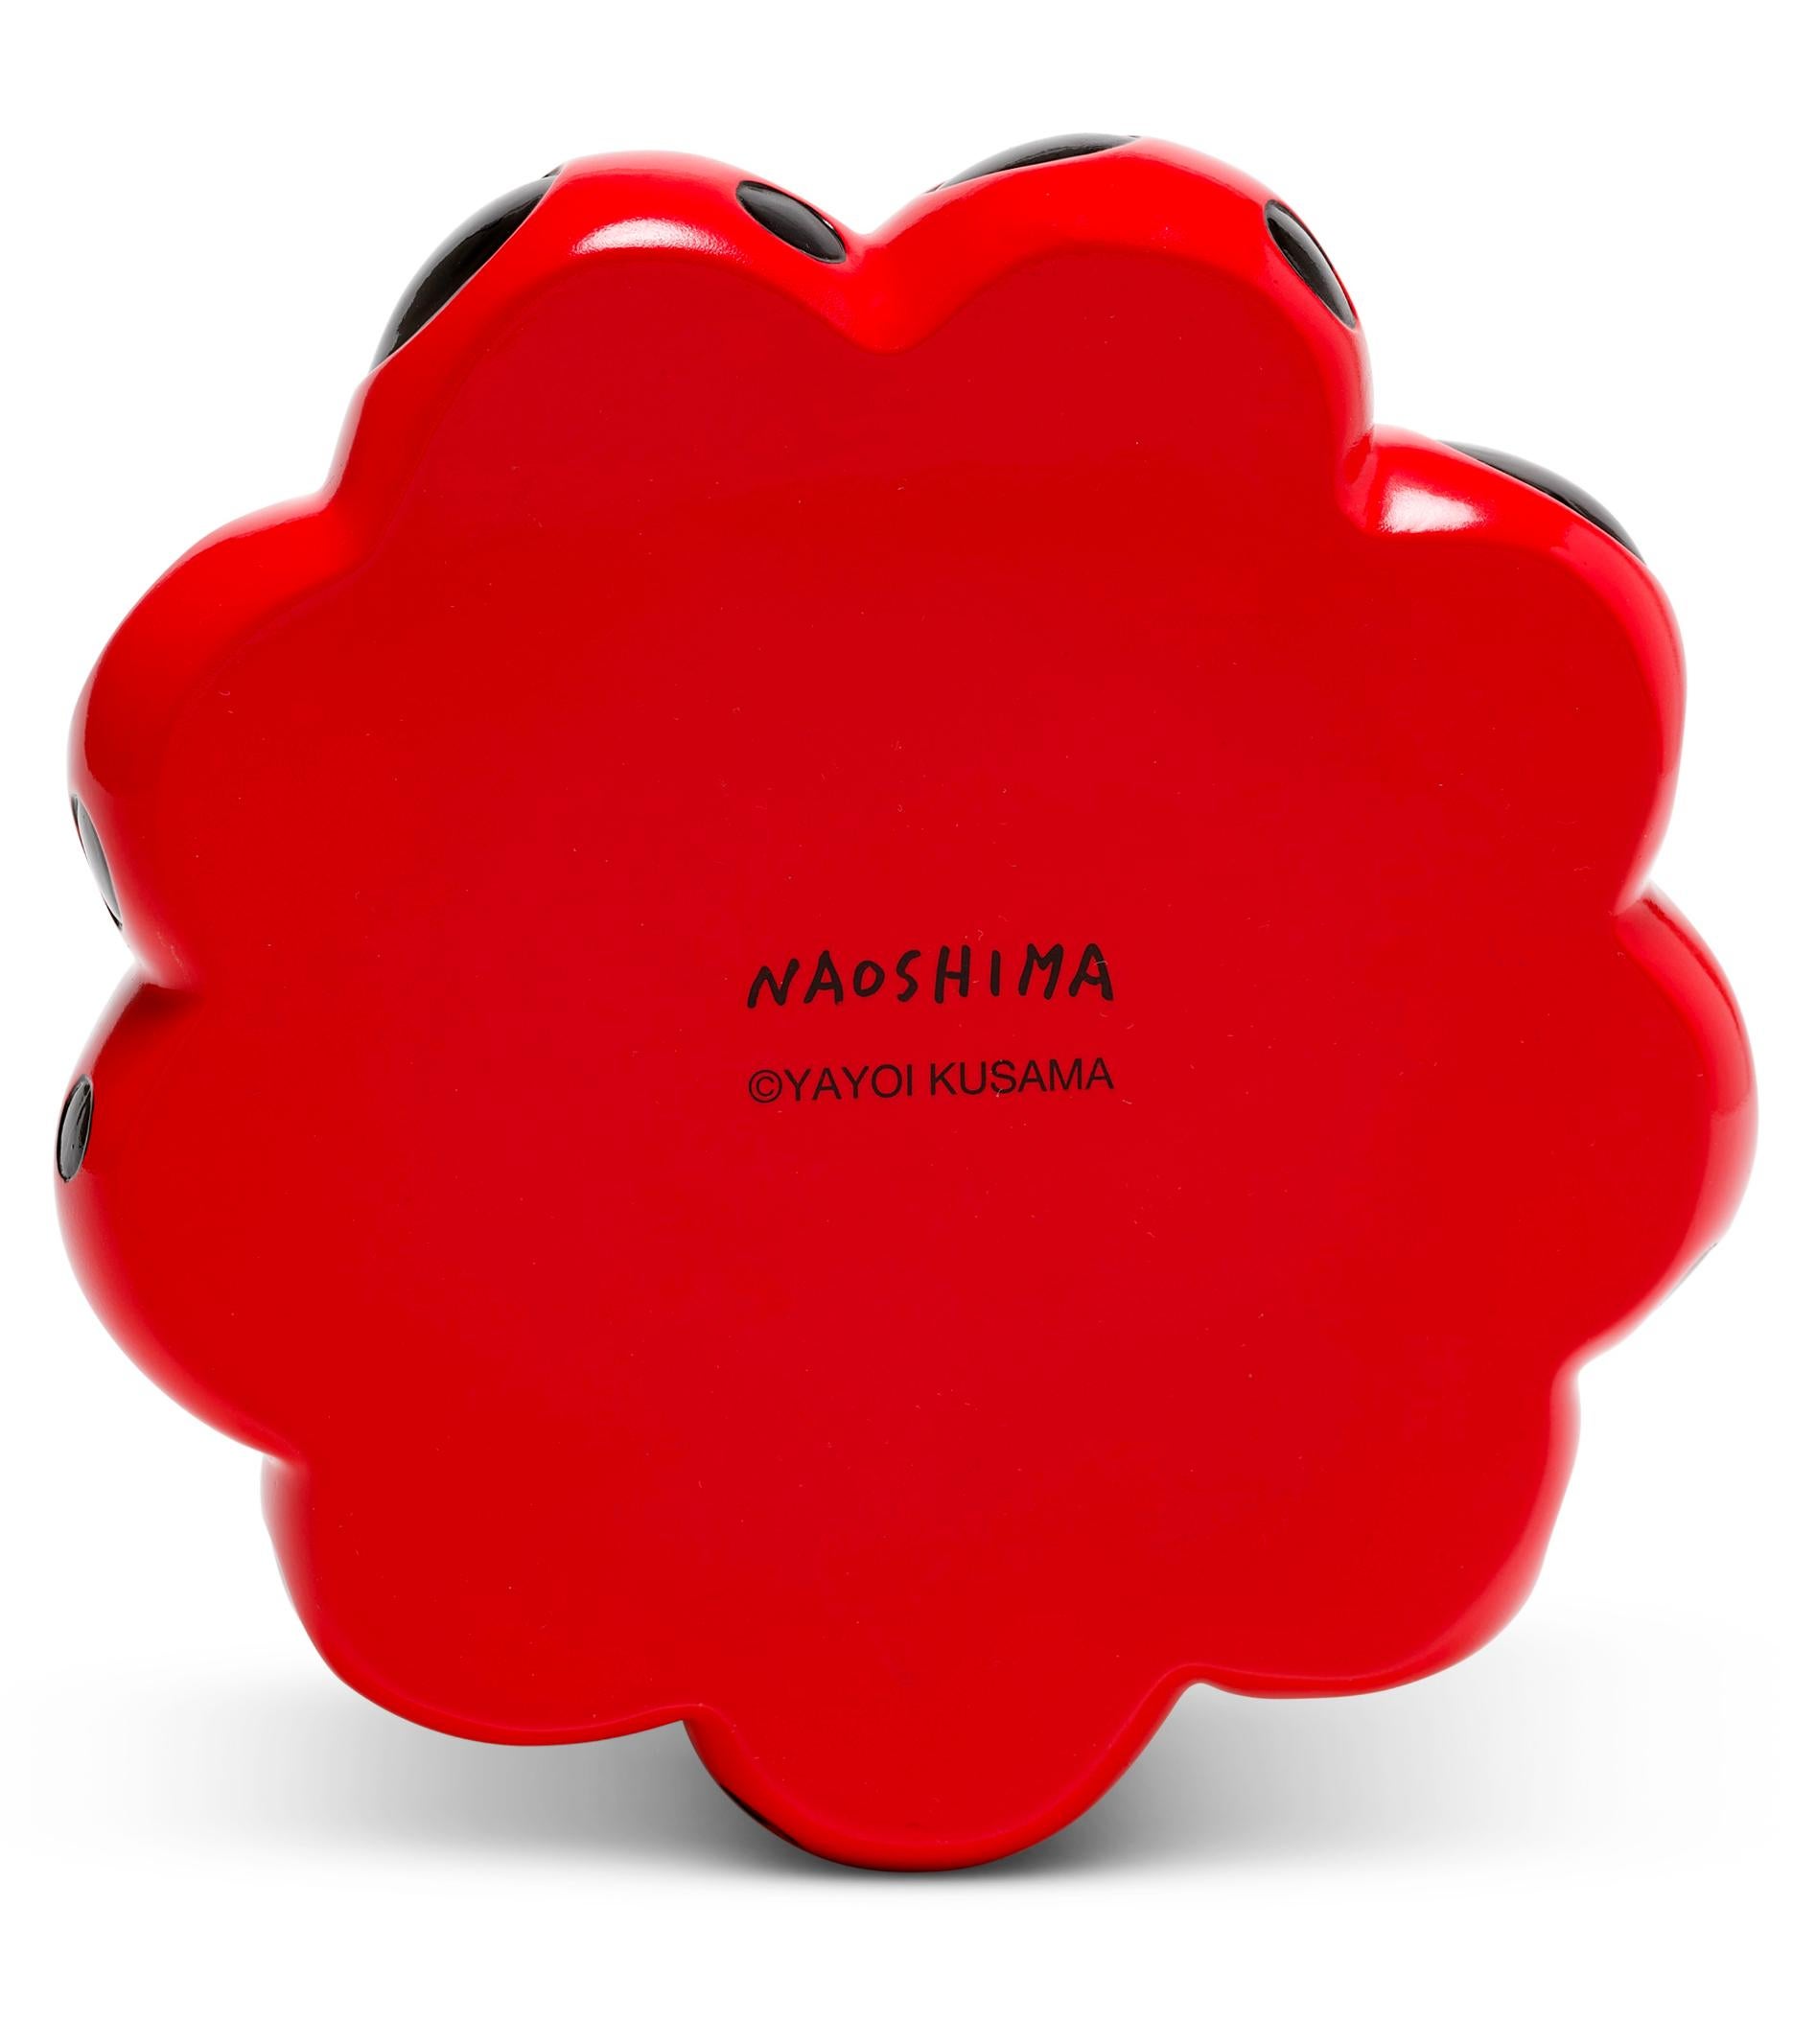 Yayoi Kusama Red & Black Pumpkin 2019:
Ein ikonisches, farbenfrohes Werk der Pop Art - diese seltene, begehrte rote Kusama-Kürbisskulptur weist die universellen Polka-Dot-Muster und kräftigen Farben auf, für die die Künstlerin vielleicht am besten